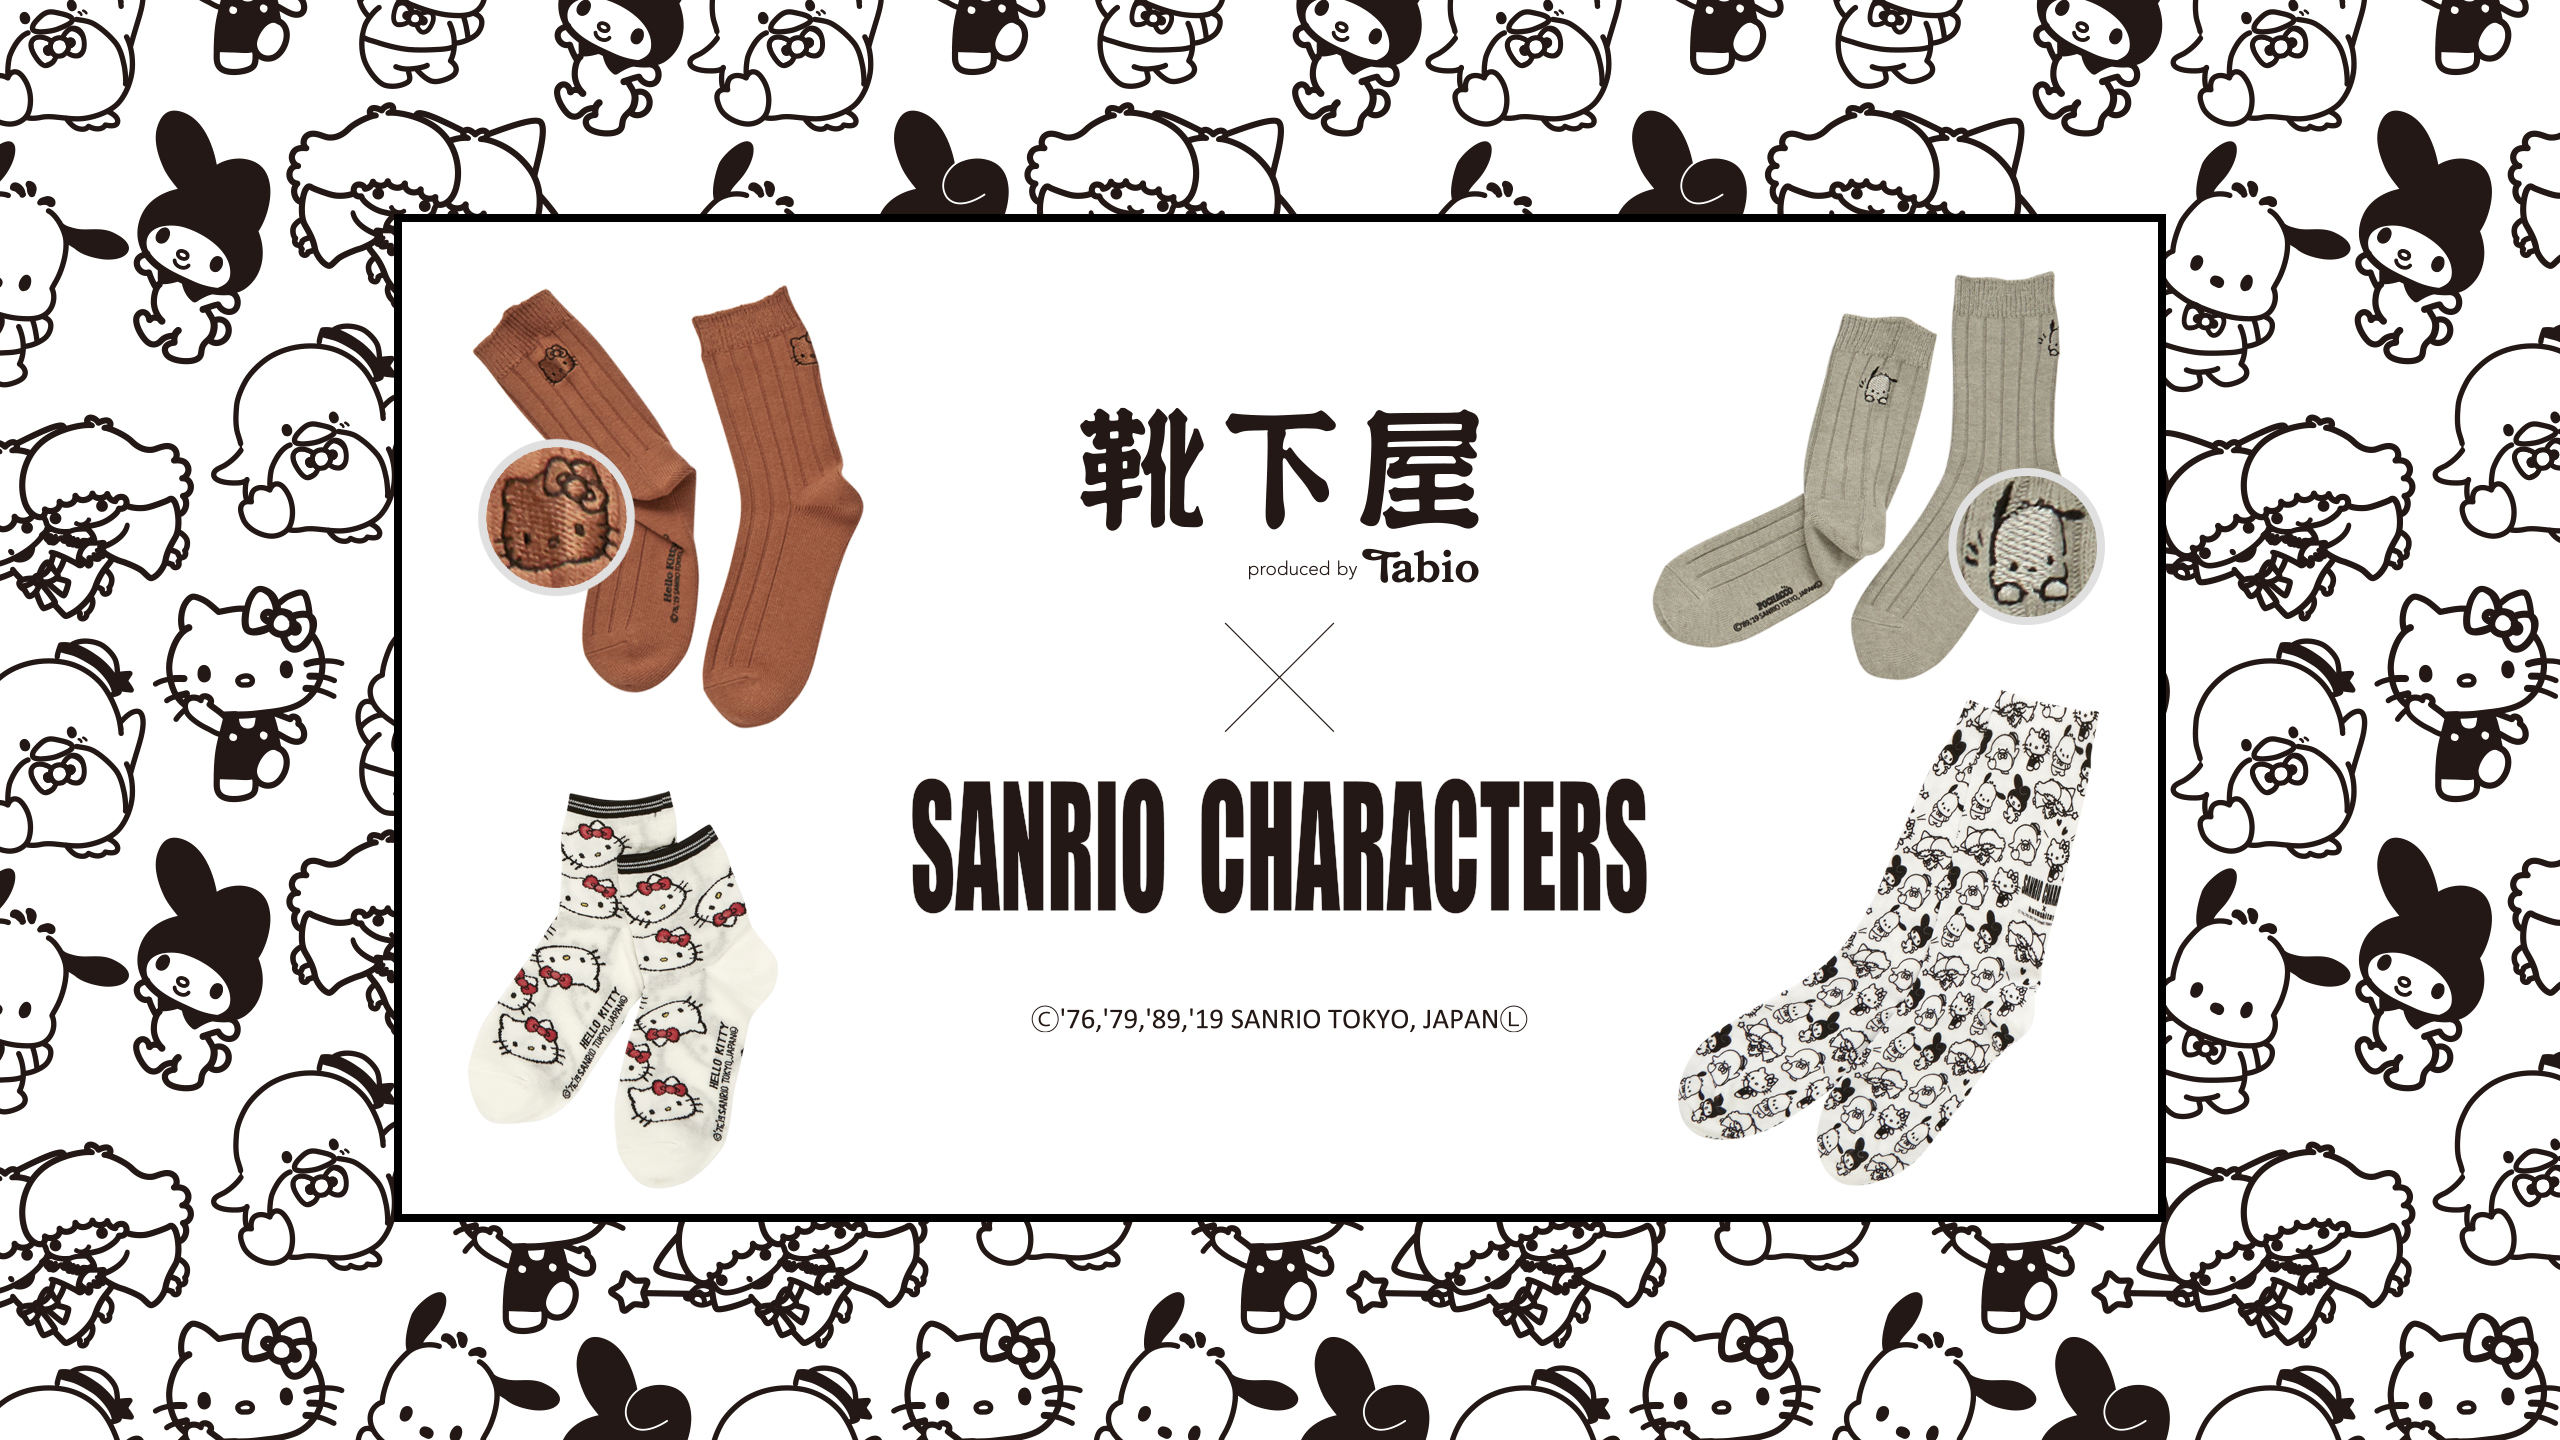 サンリオキャラクターズのコラボソックスが登場 靴下屋公式通販 Tabio オンラインストア